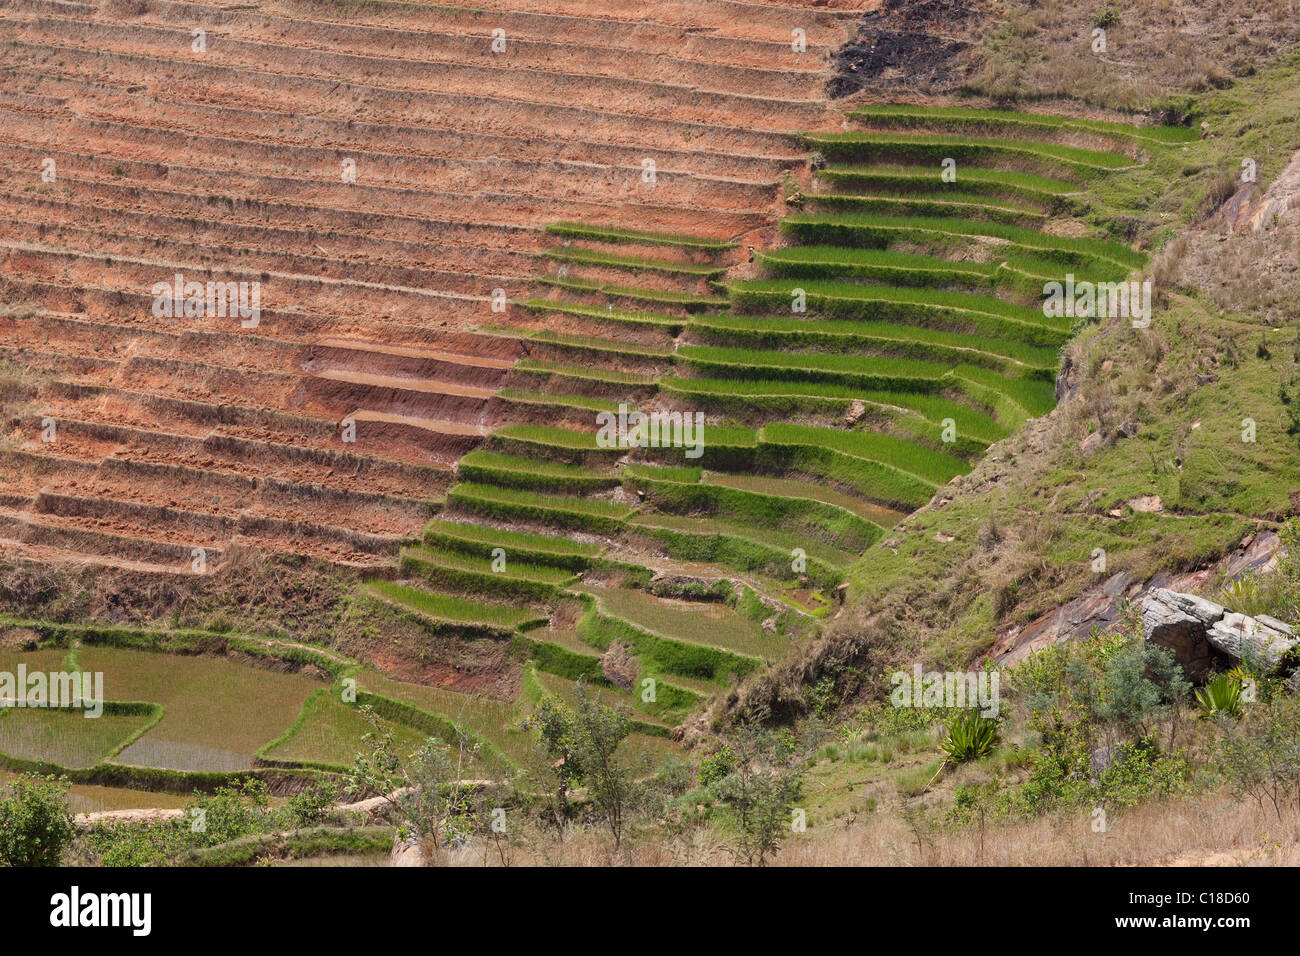 River Valley gestionado para el arroz (Oryza sativa), cultivo de cosechas. El sur de Madagascar. Foto de stock